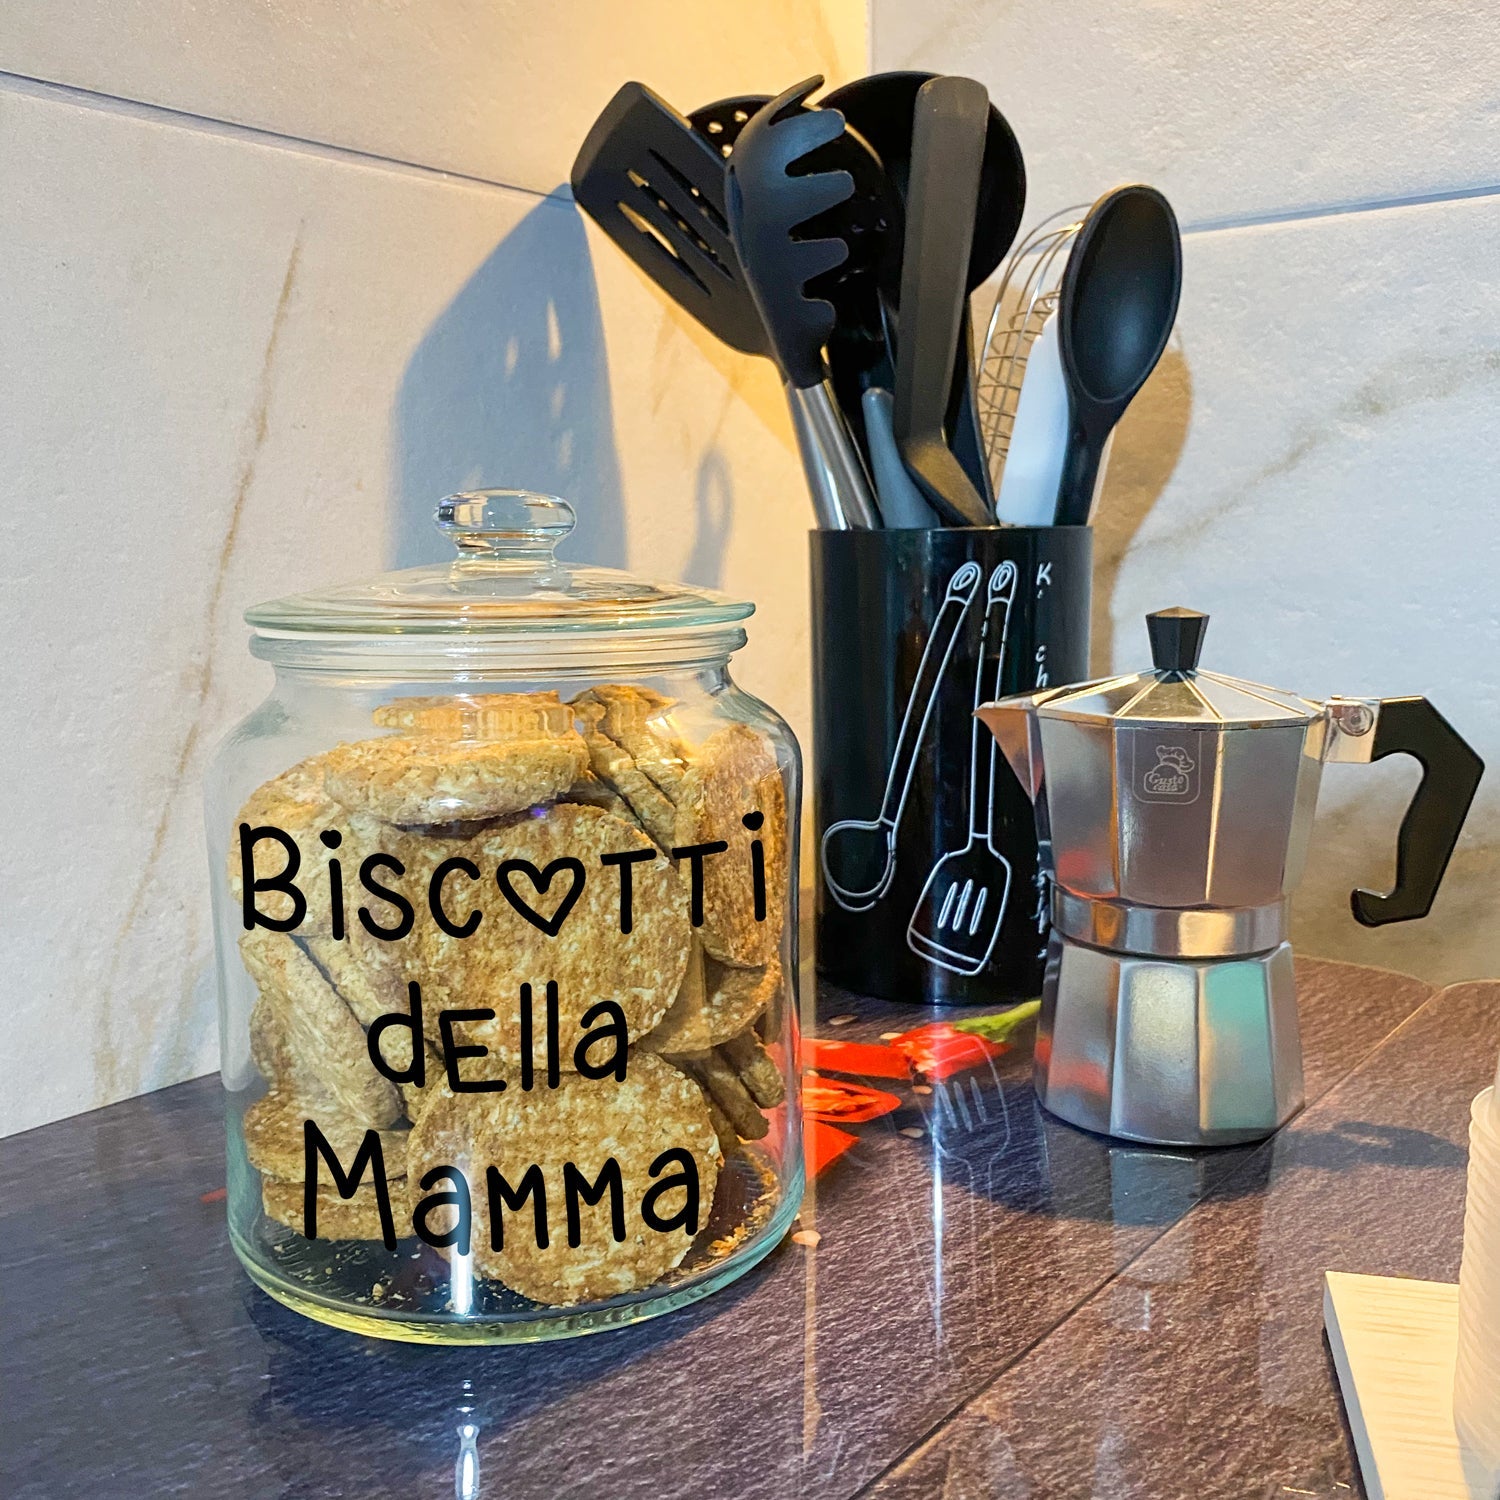 Biscottiera con scritta "Biscotti della Mamma" - Realizzandoo